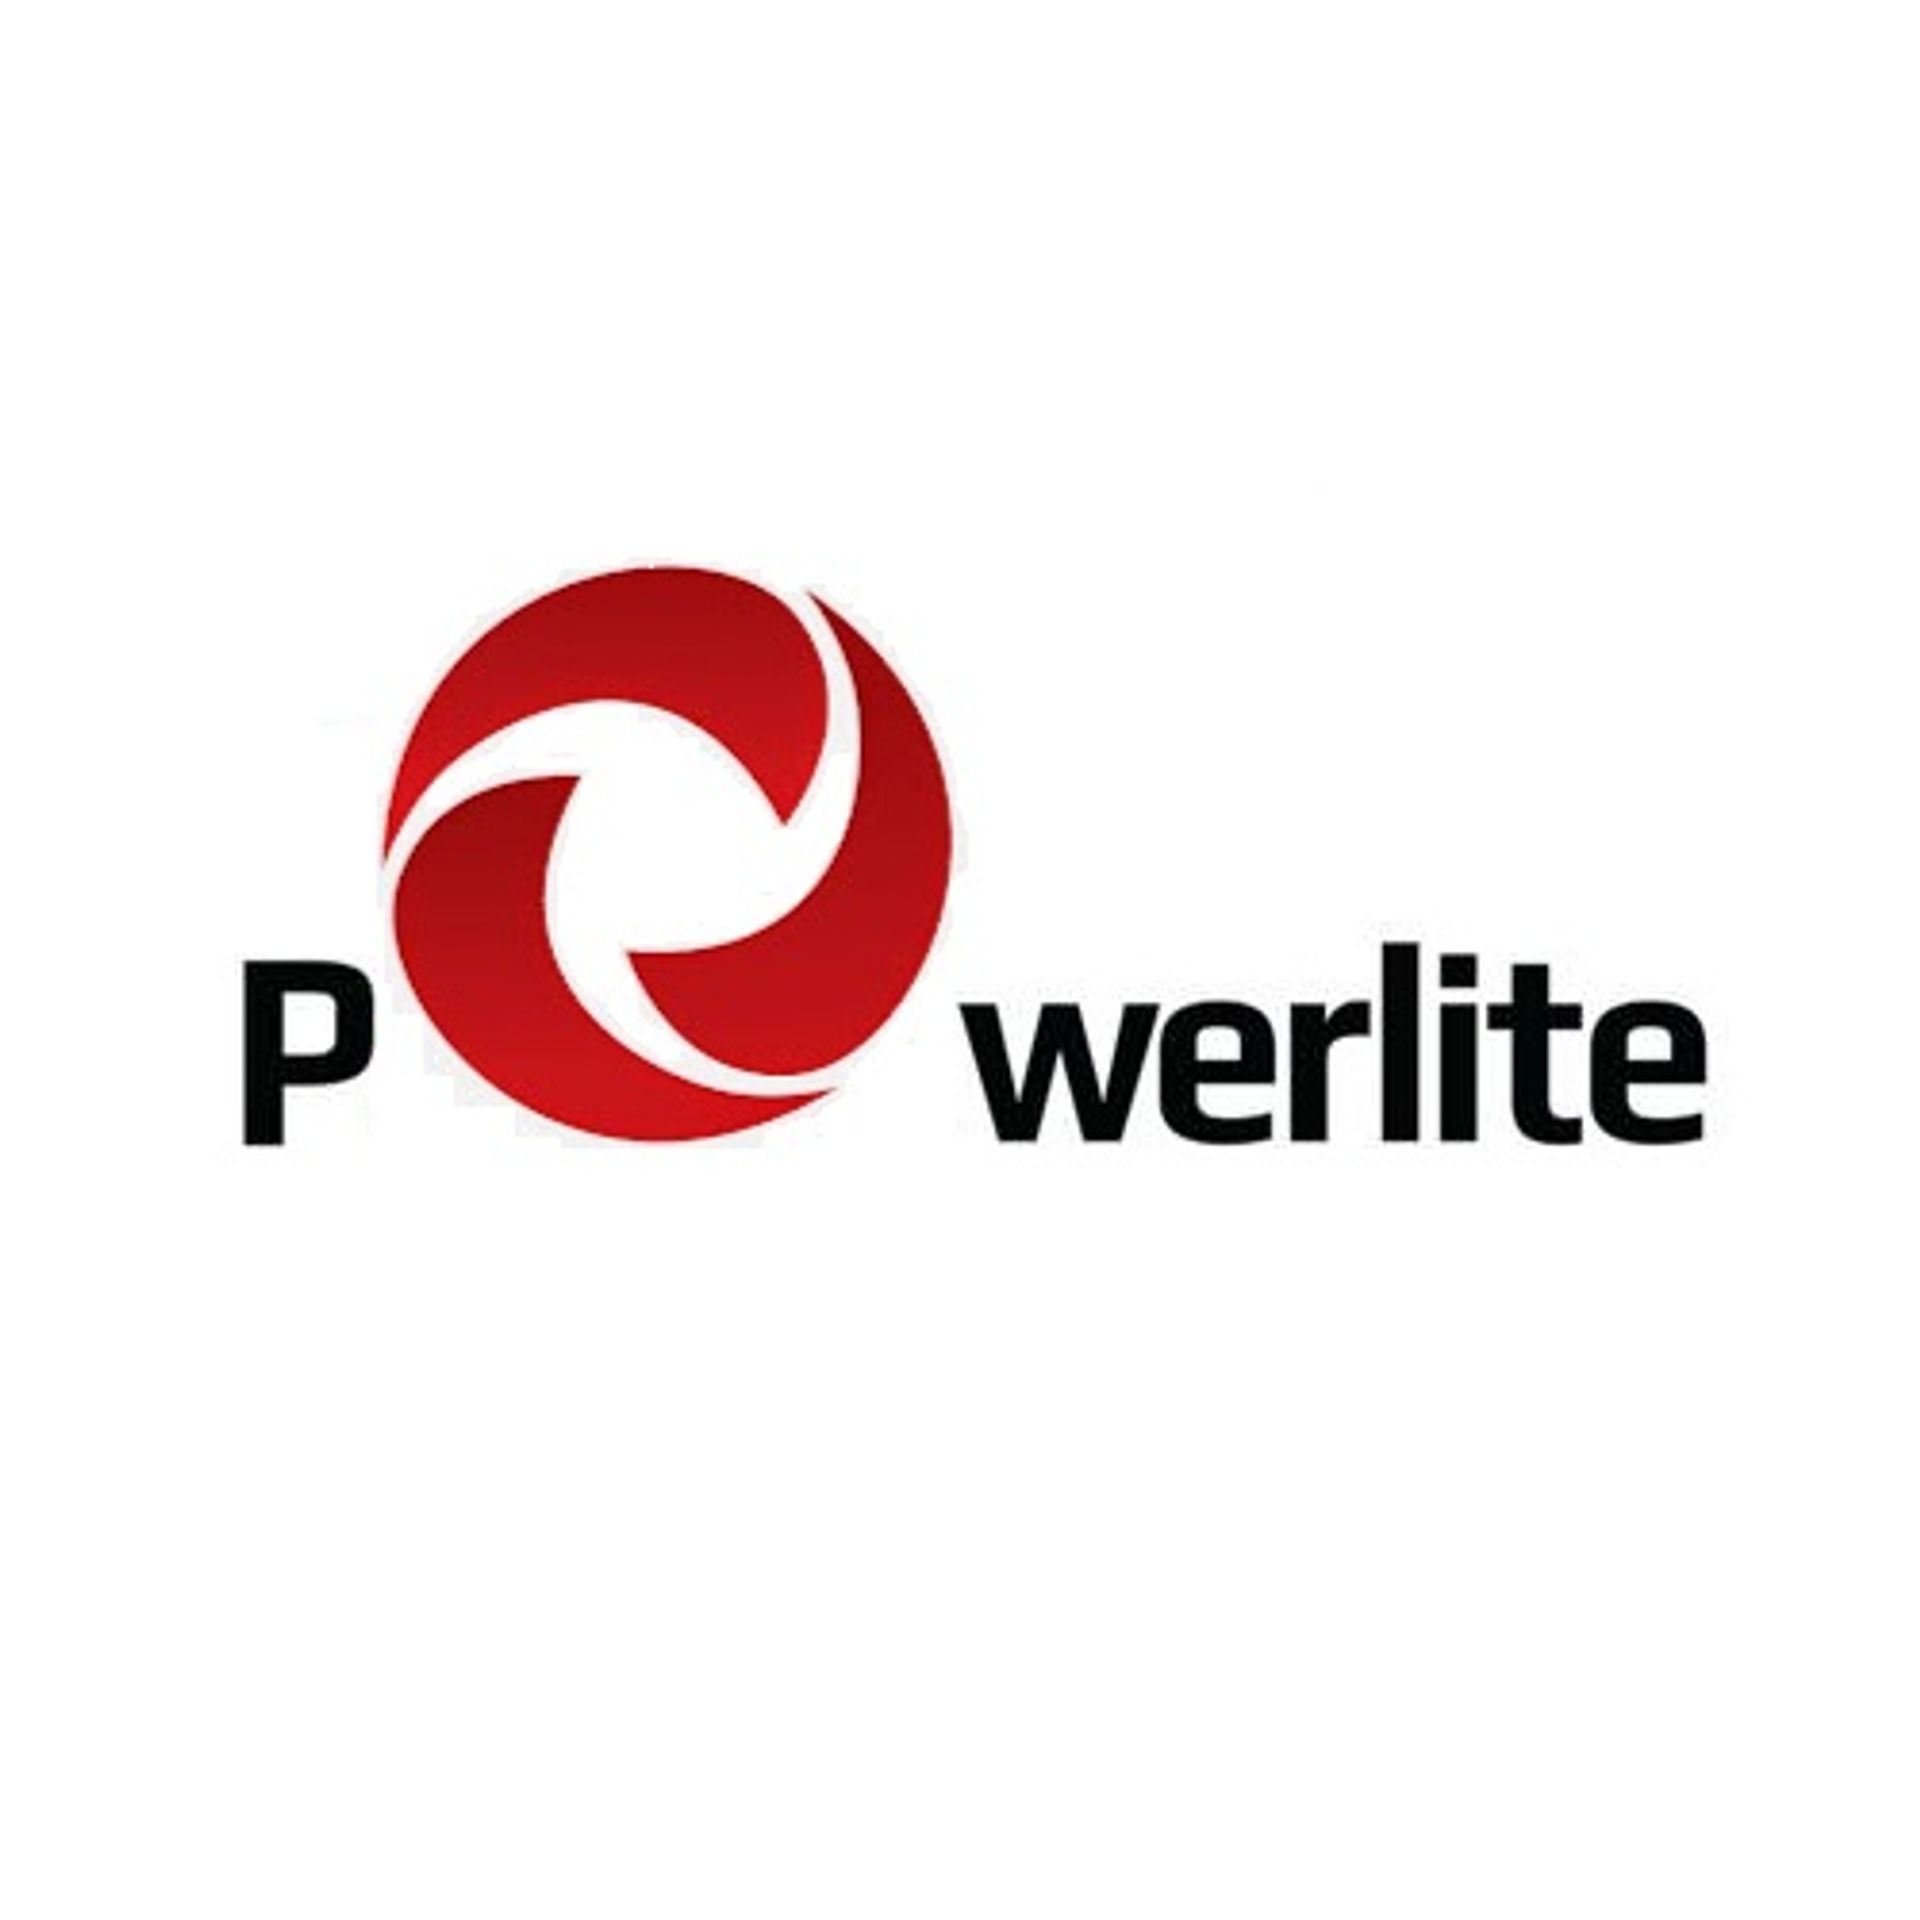 Powerlite Australia Pty Limited